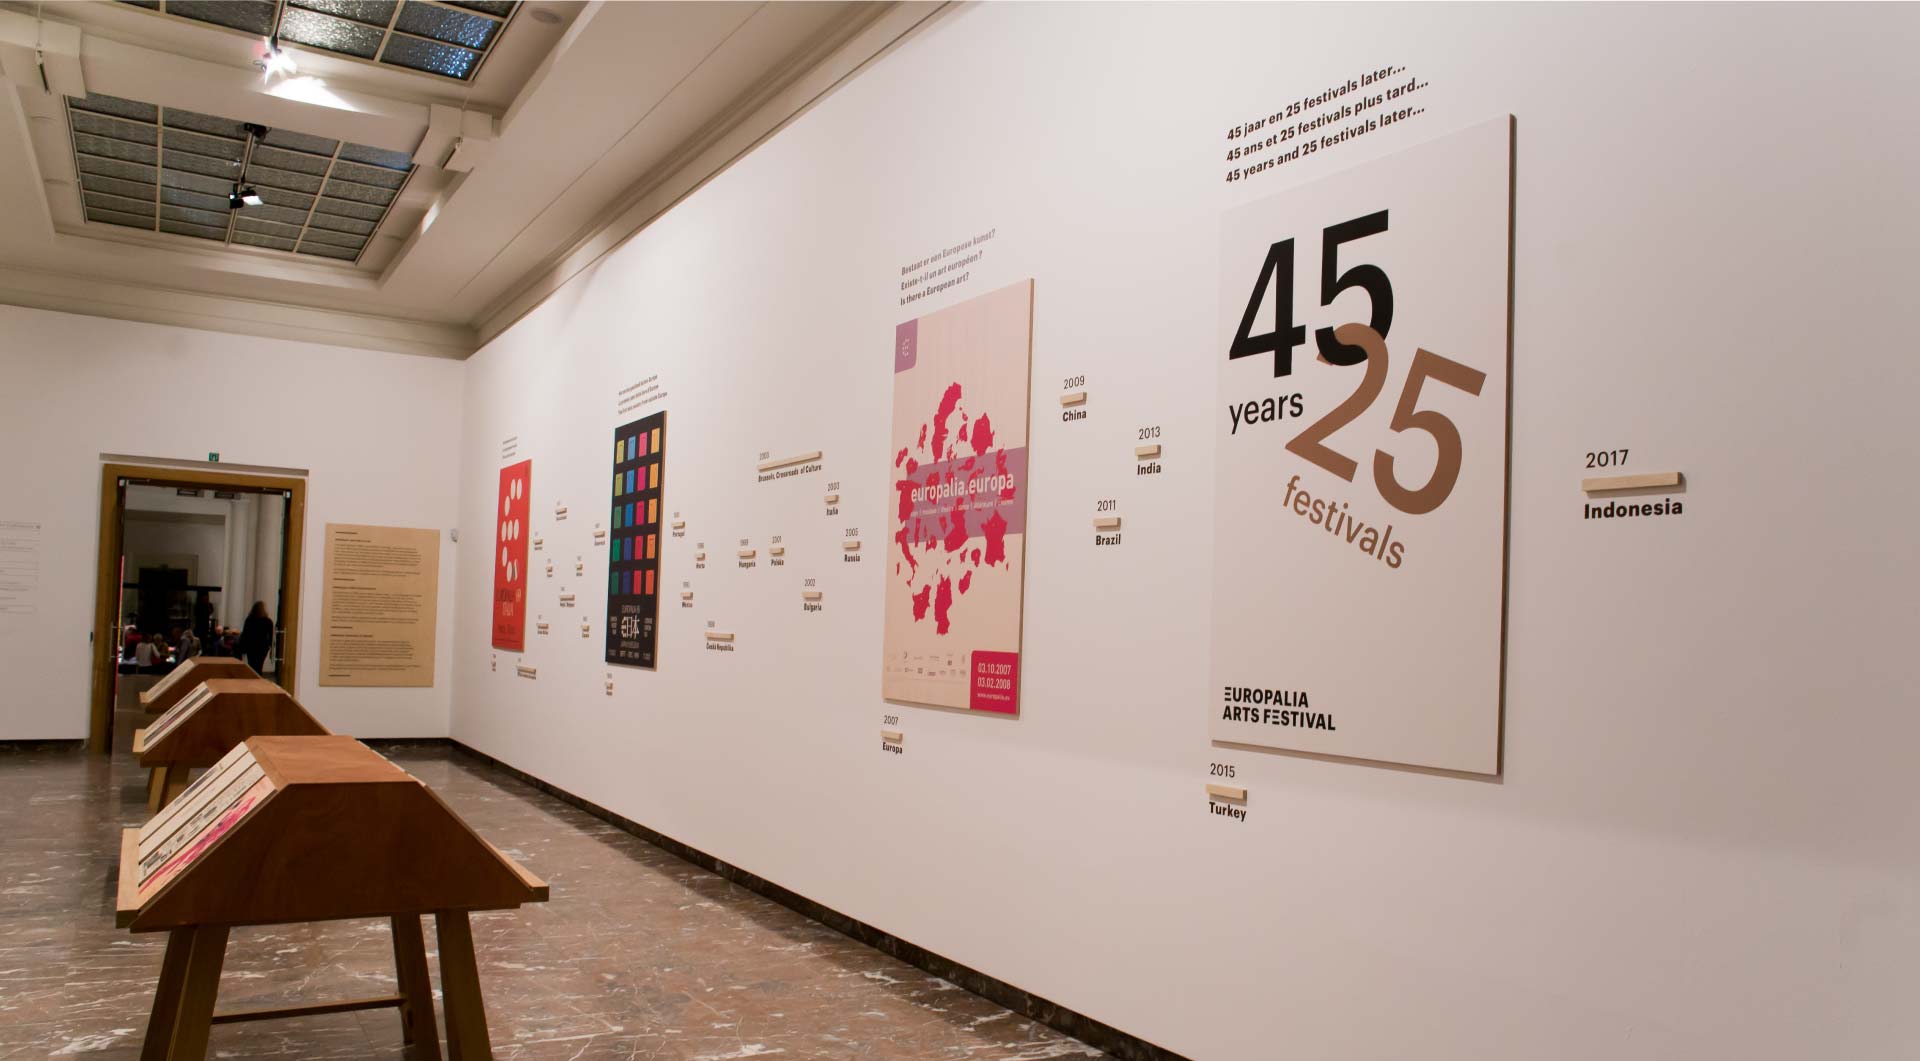 TAVU imprime et monte l'expo Europalia 45 ans d'existence et sa 25e édition